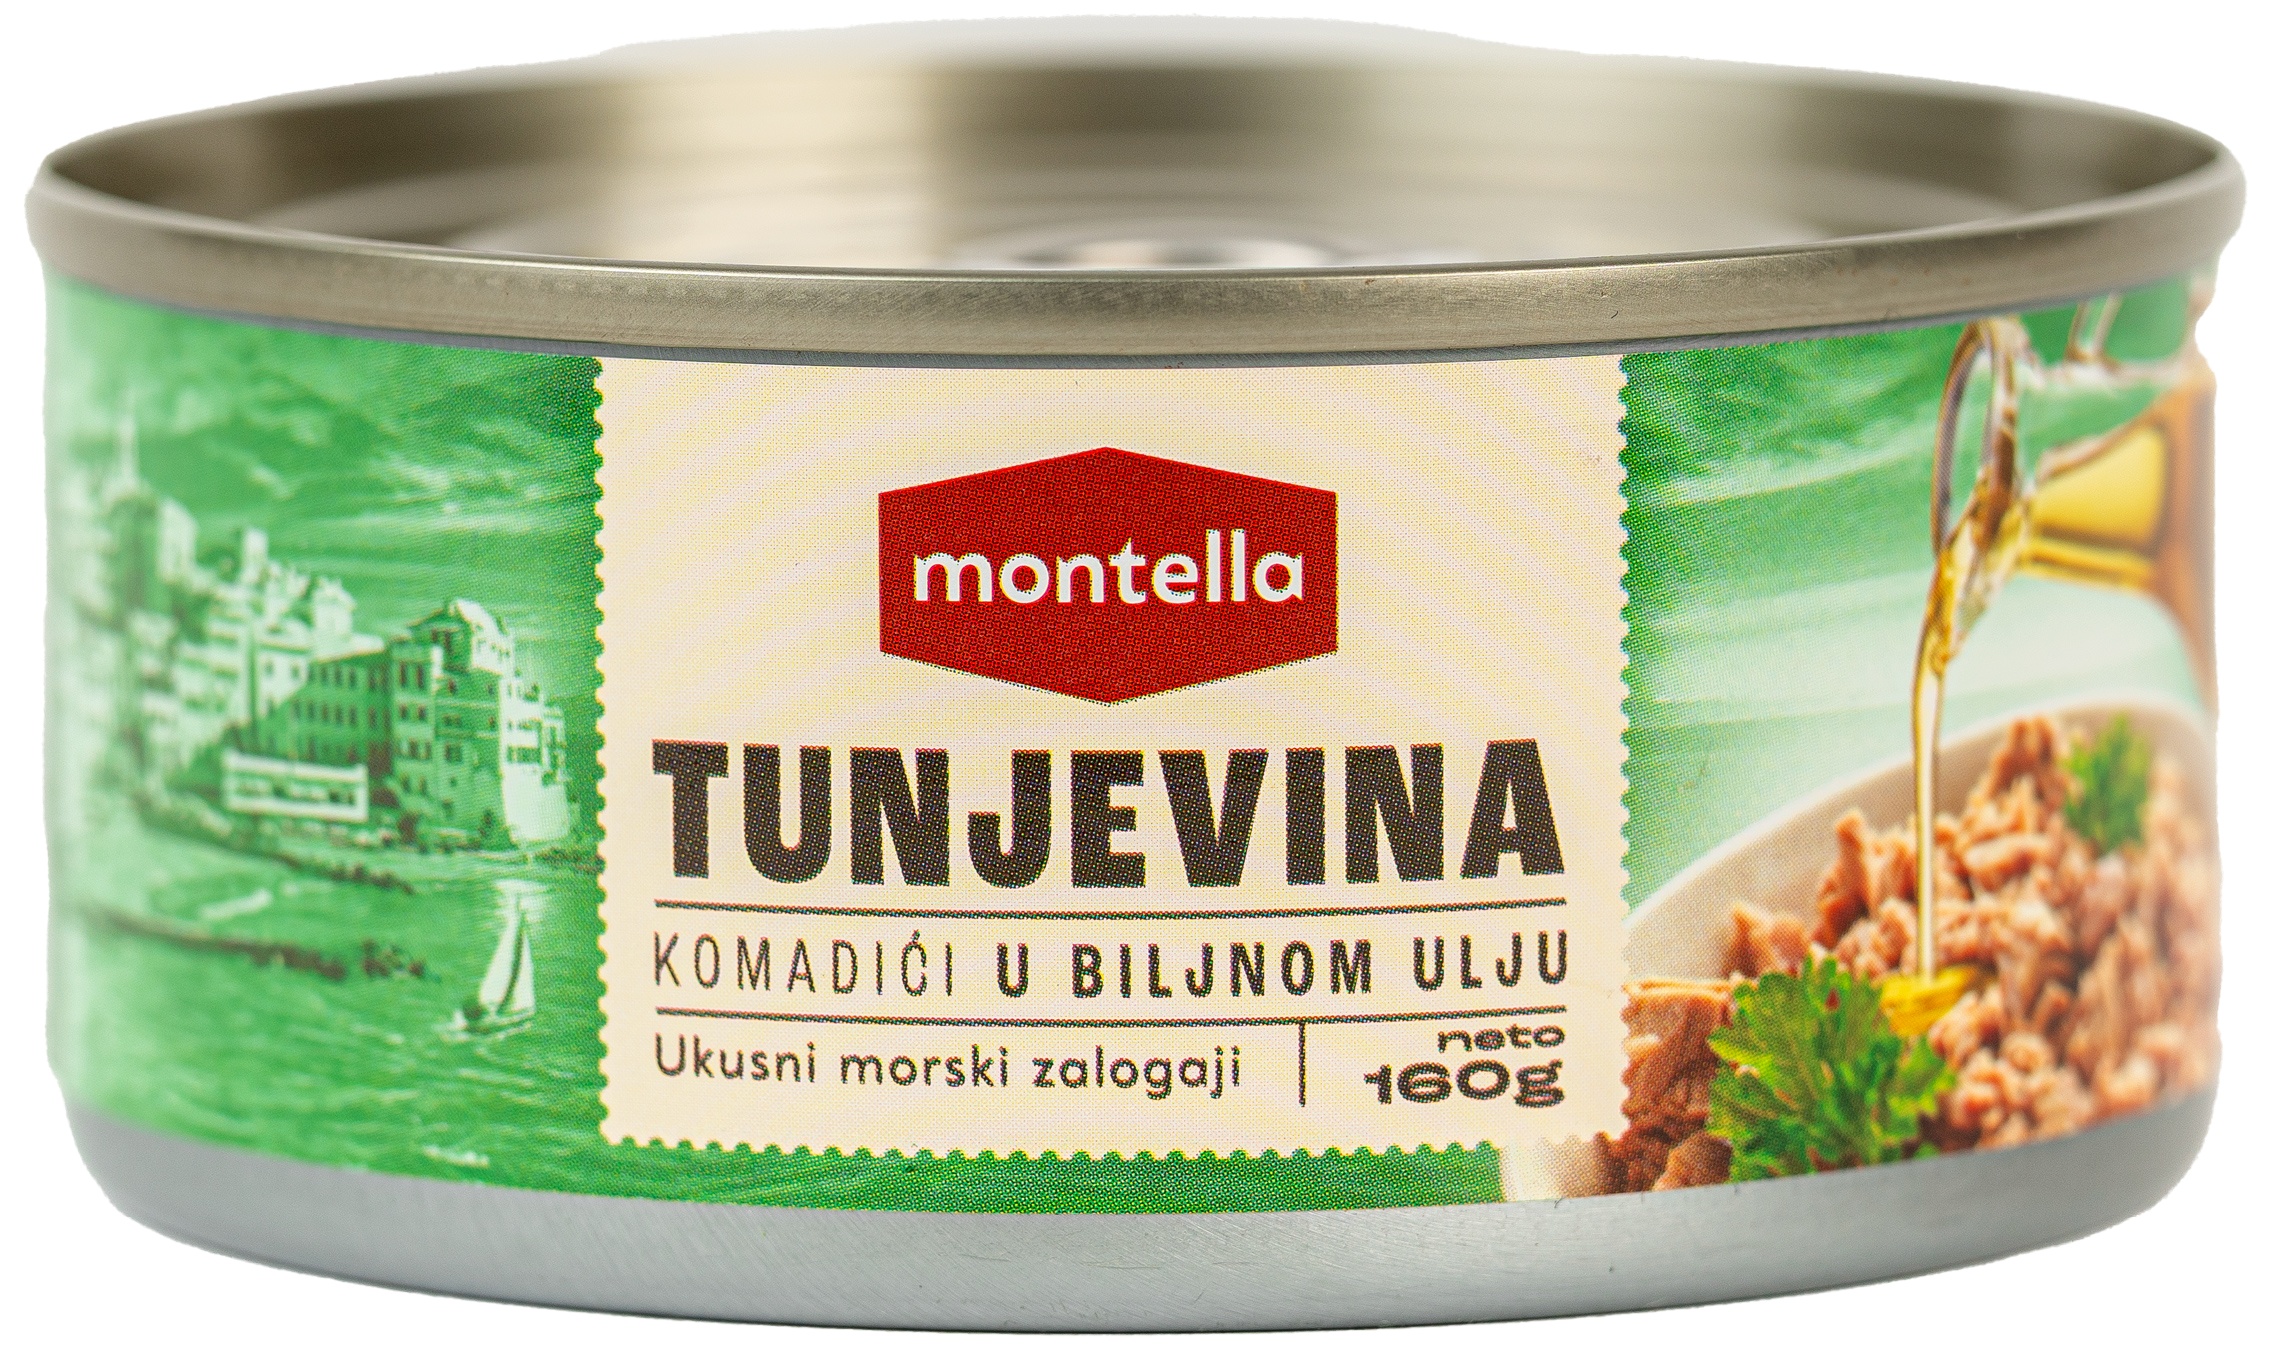 Slika za Tunjevina Montella komadići u biljnom ulju 160g